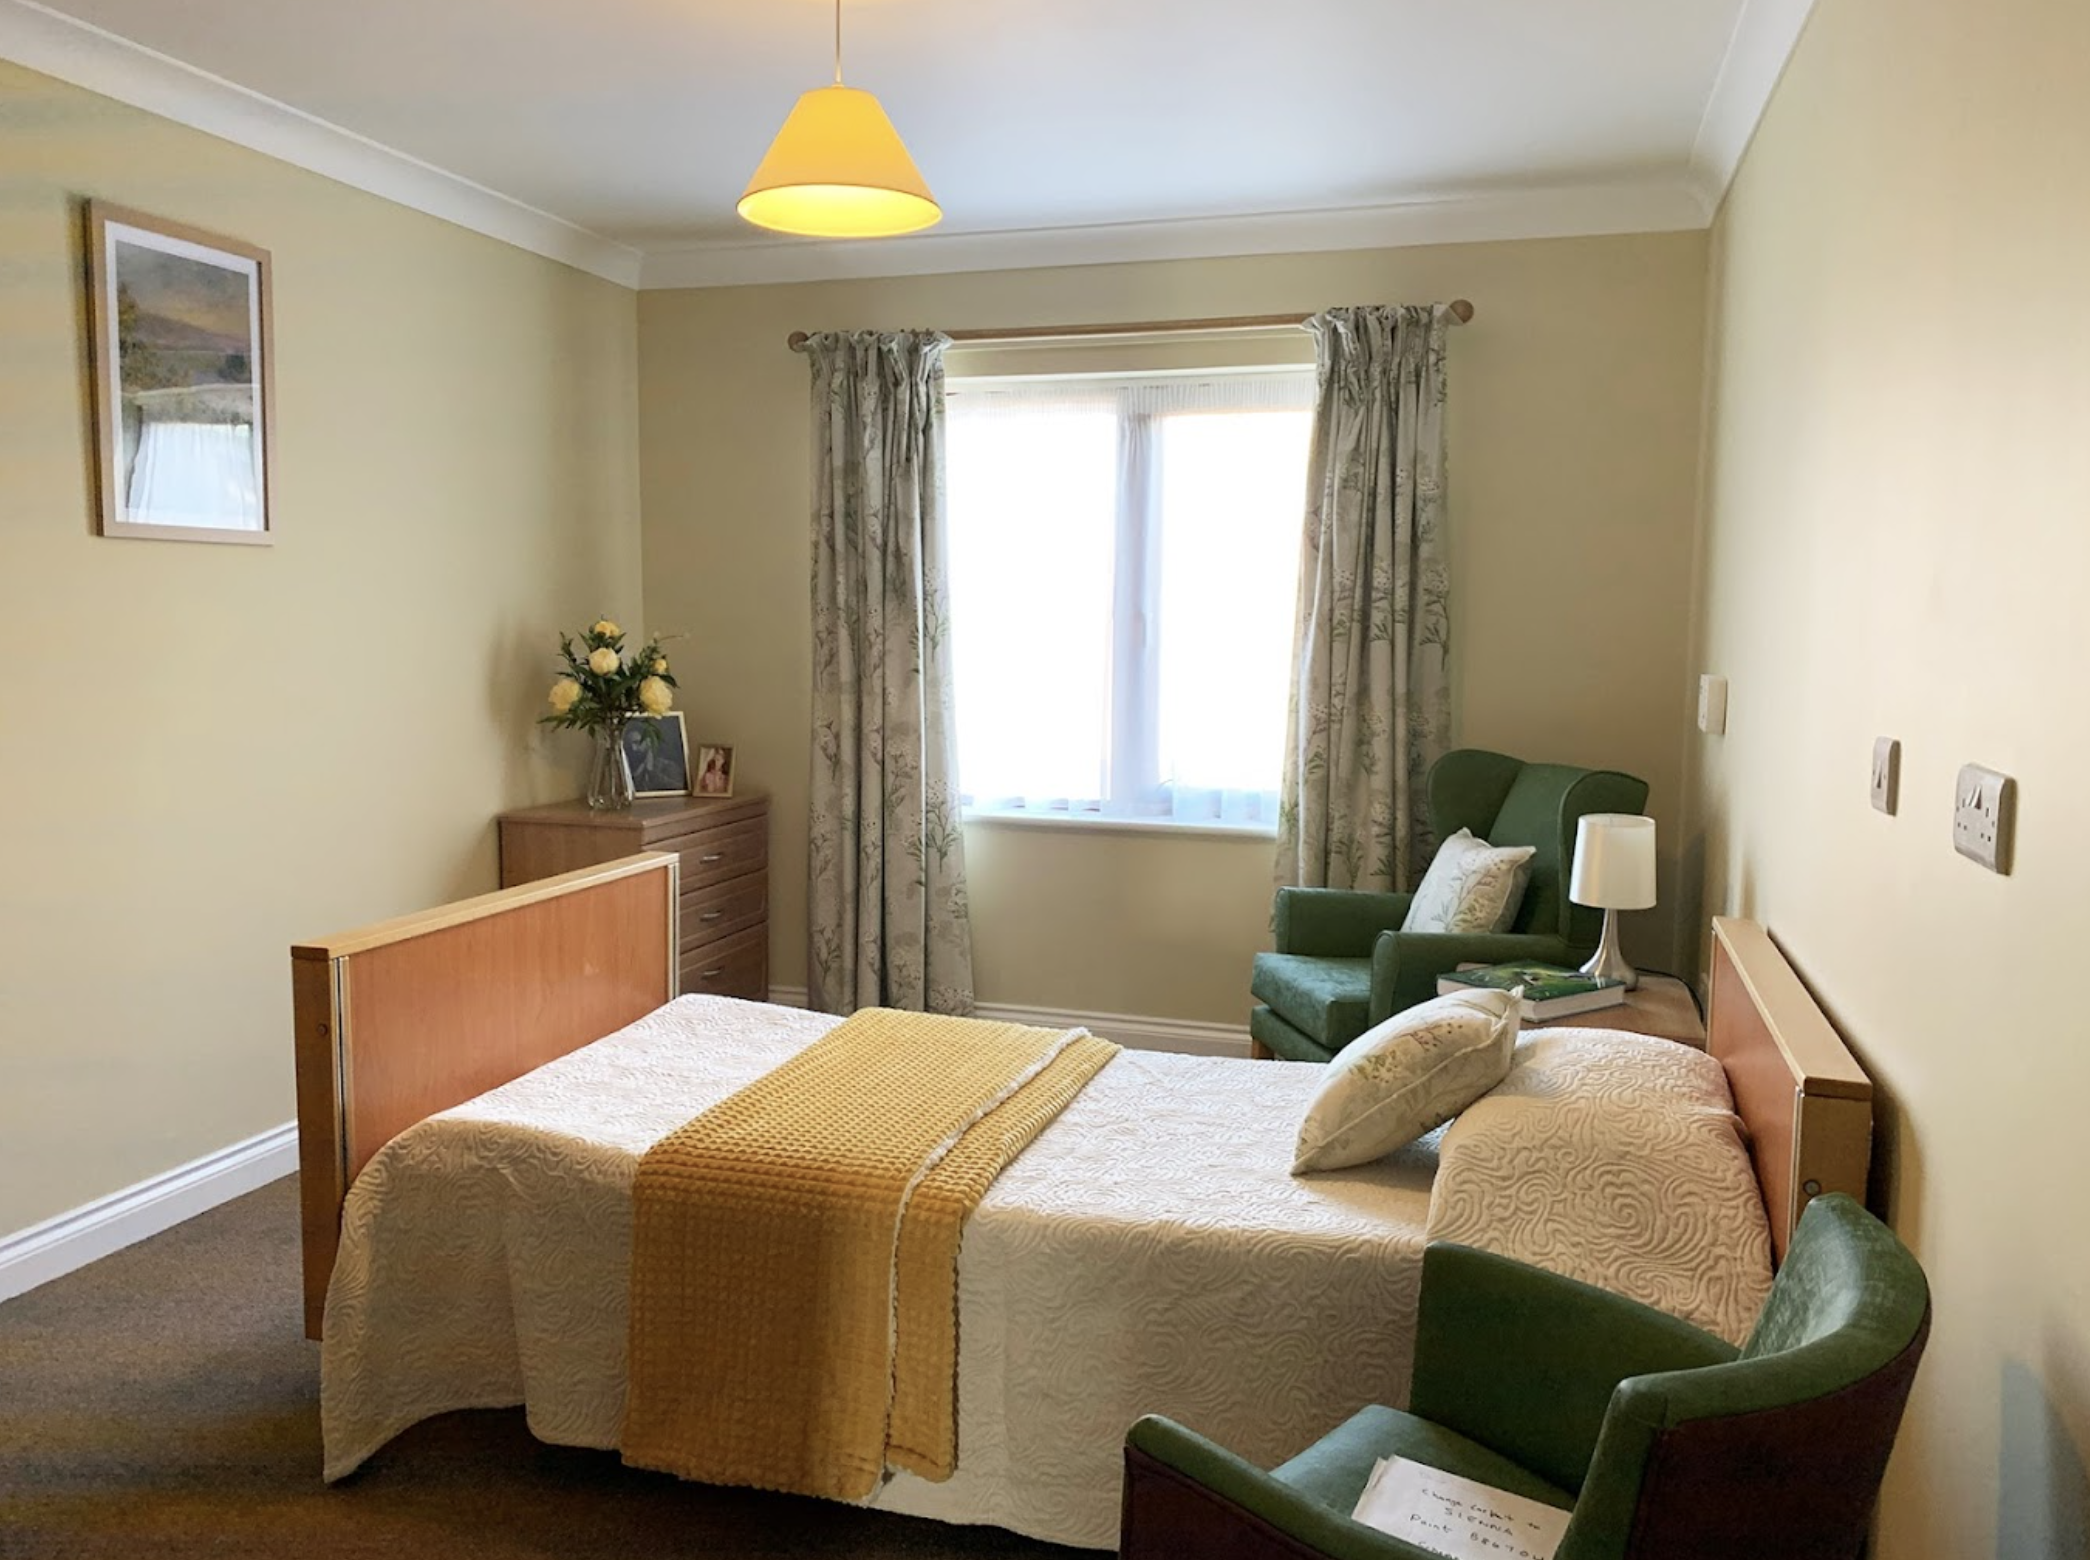 Bedroom of Fern Brook Lodge care home in Gillingham, Dorset